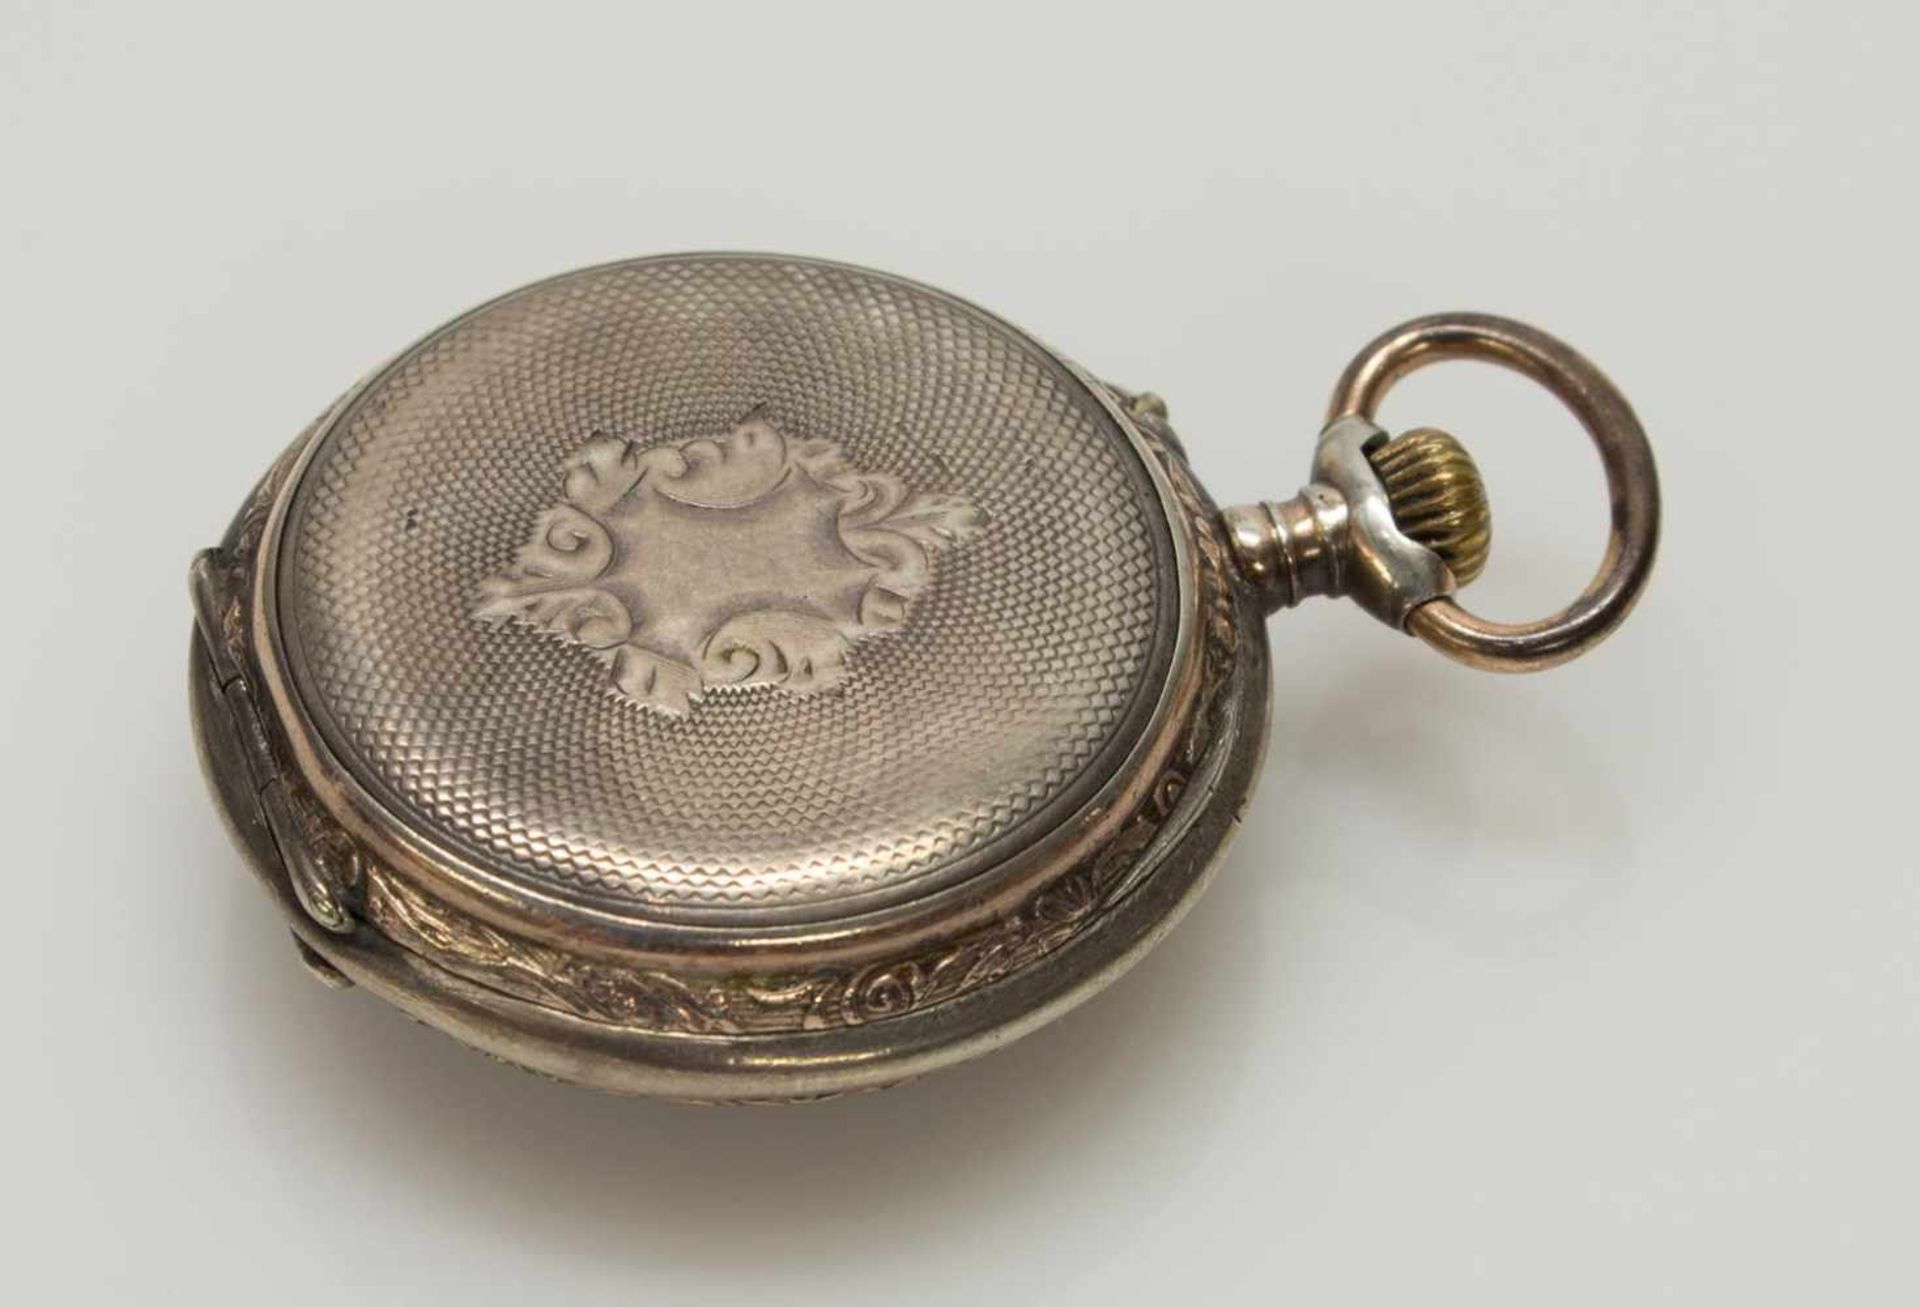 Damen-Taschenuhrum 1900, 800er Silbergehäuse, 6 Rubine, arabisches Zifferblatt, funktionstüchtig - Image 3 of 3